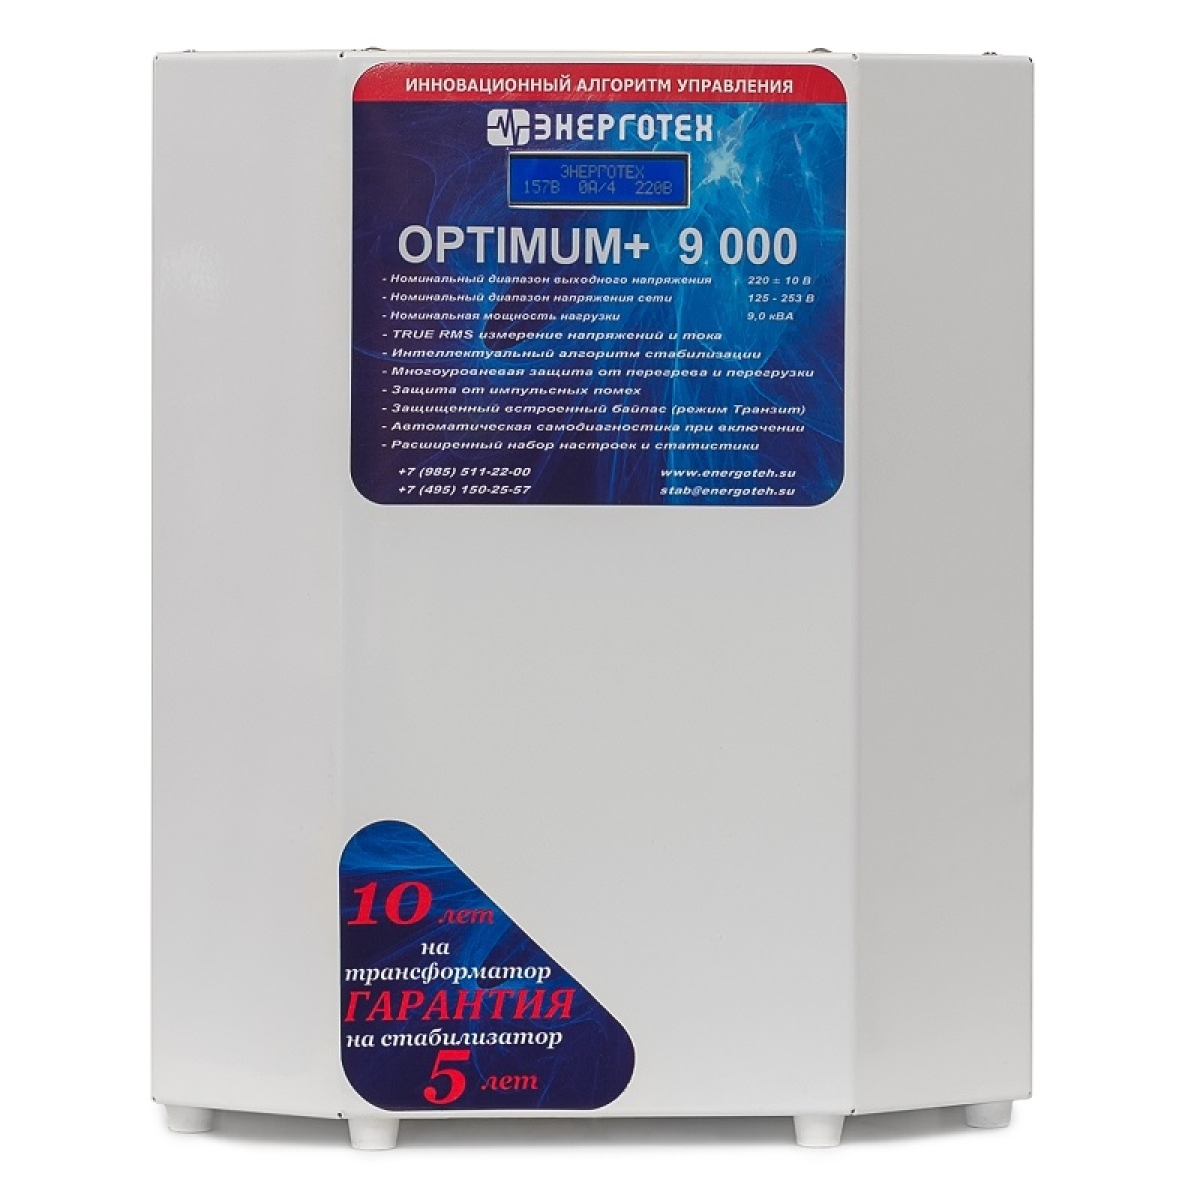 Однофазный стабилизатор Энерготех OPTIMUM+ 9000